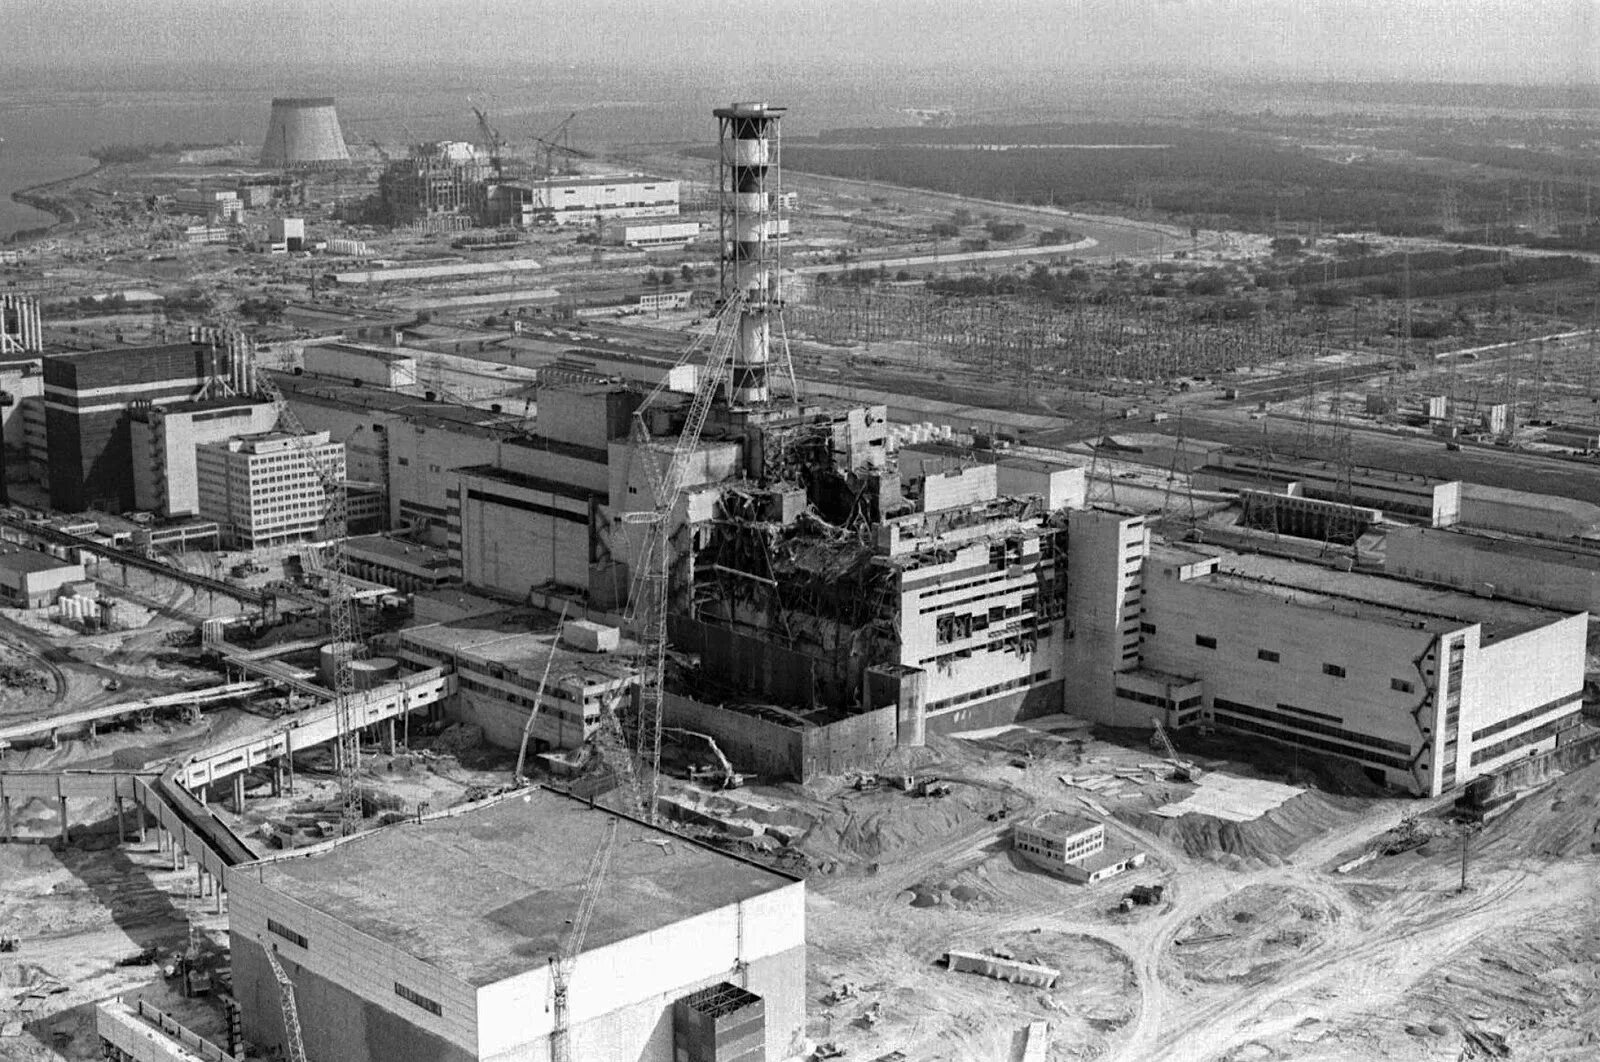 Chernobyl disaster. Чернобыльская АЭС. Чернобыль 26.04.1986. Чернобыльская АЭС 1986. Авария на Чернобыльской АЭС В 1986 году.